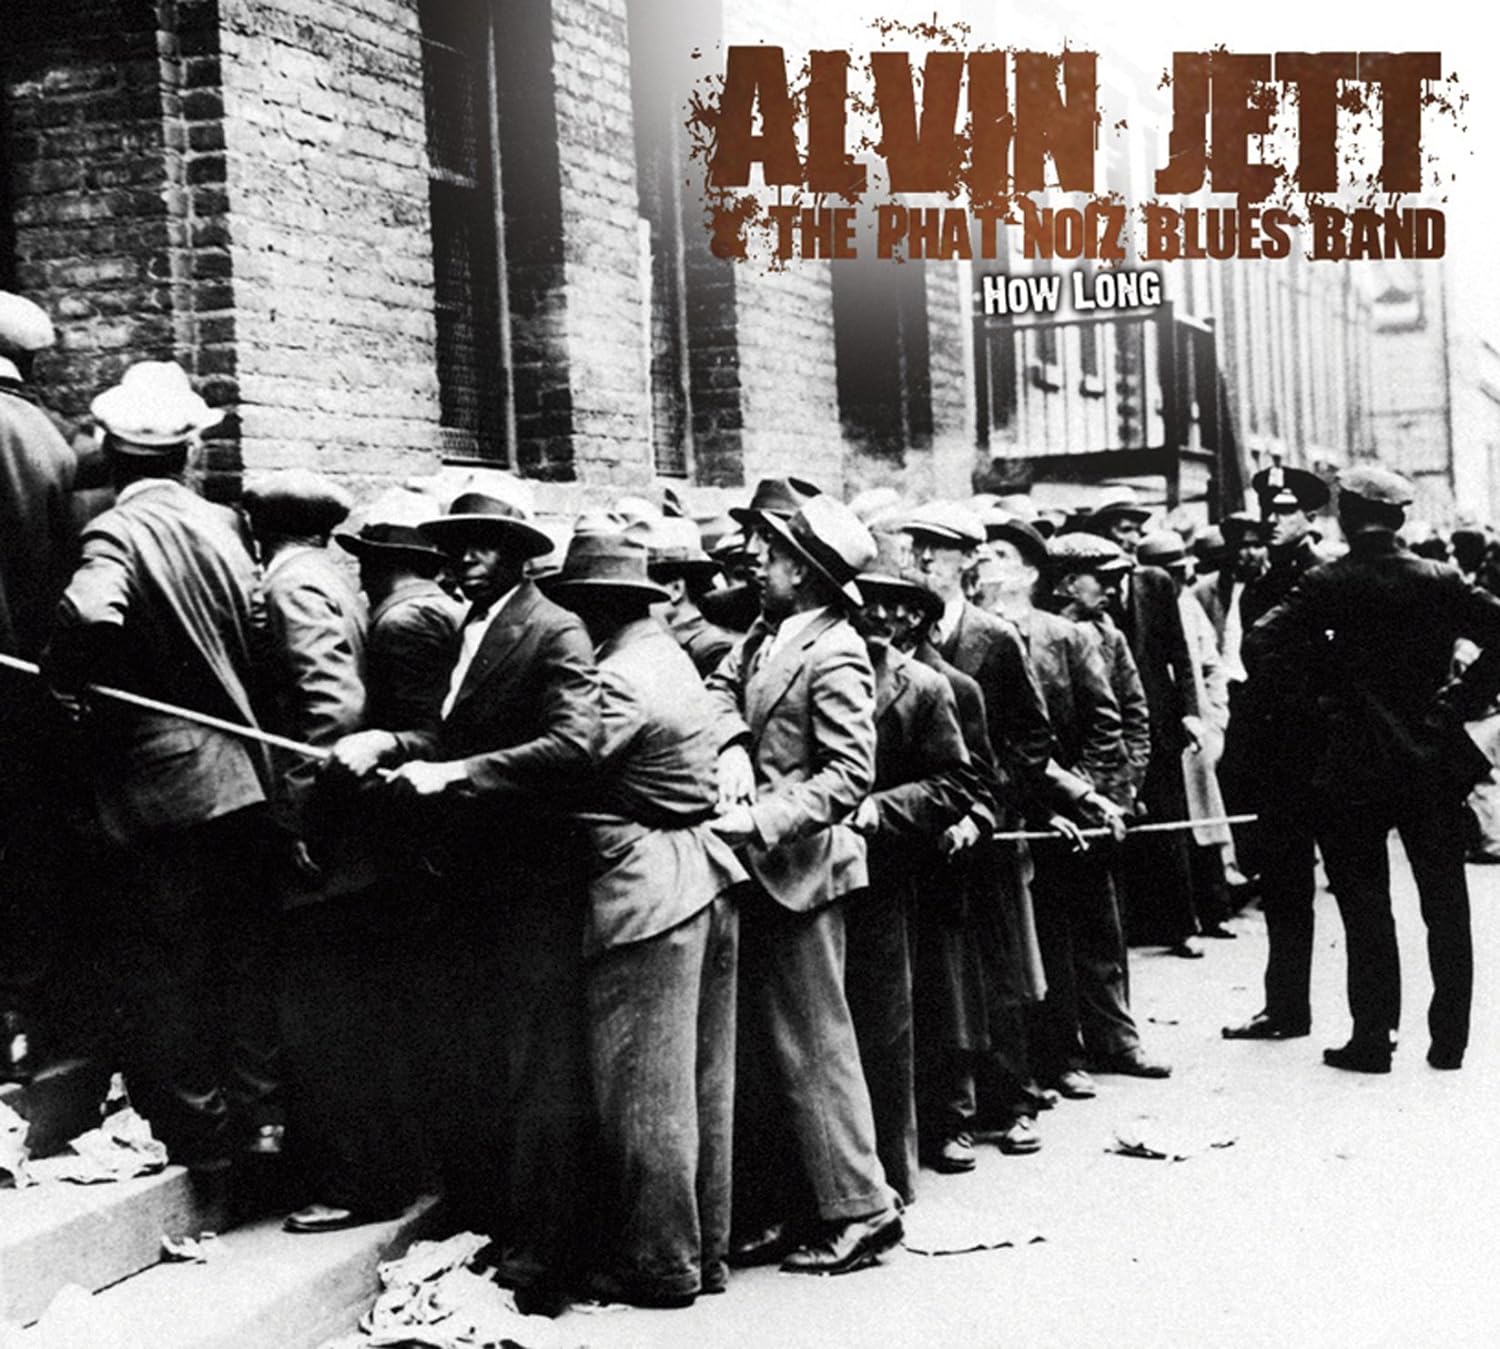 Alvin Jett & The Phat noiZ Blues Band - How Long